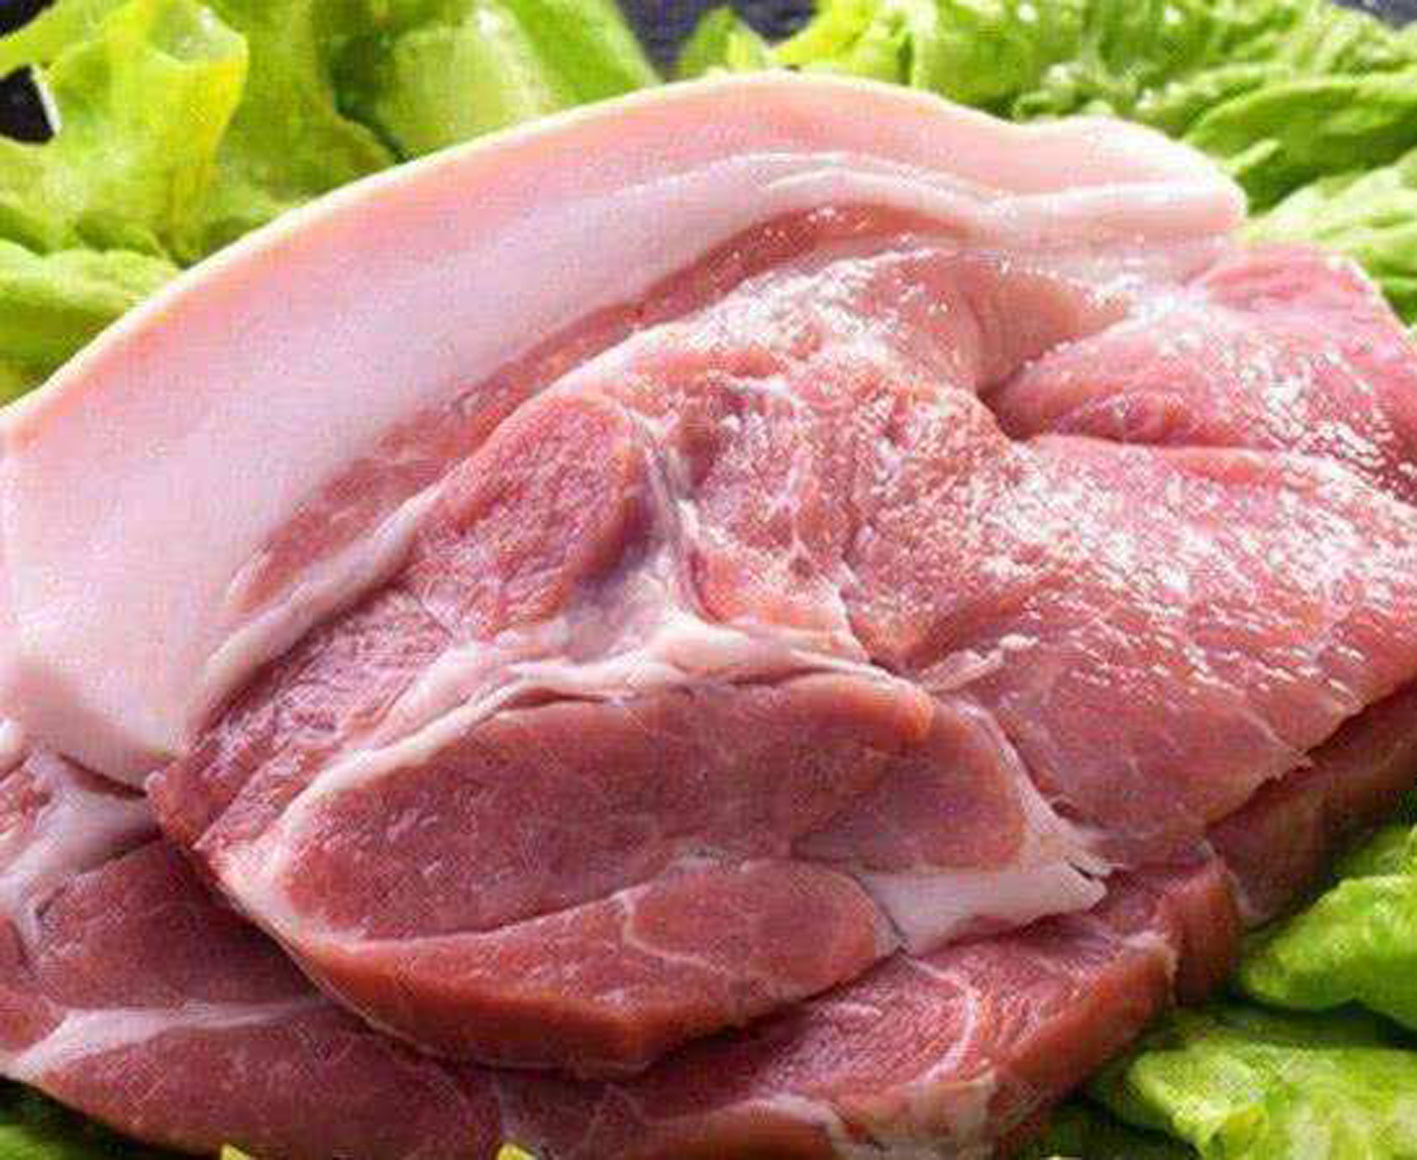 猪颈肉,别称槽头肉,血脖 猪颈部的肉,此处是杀猪时候的刀口位置,污血